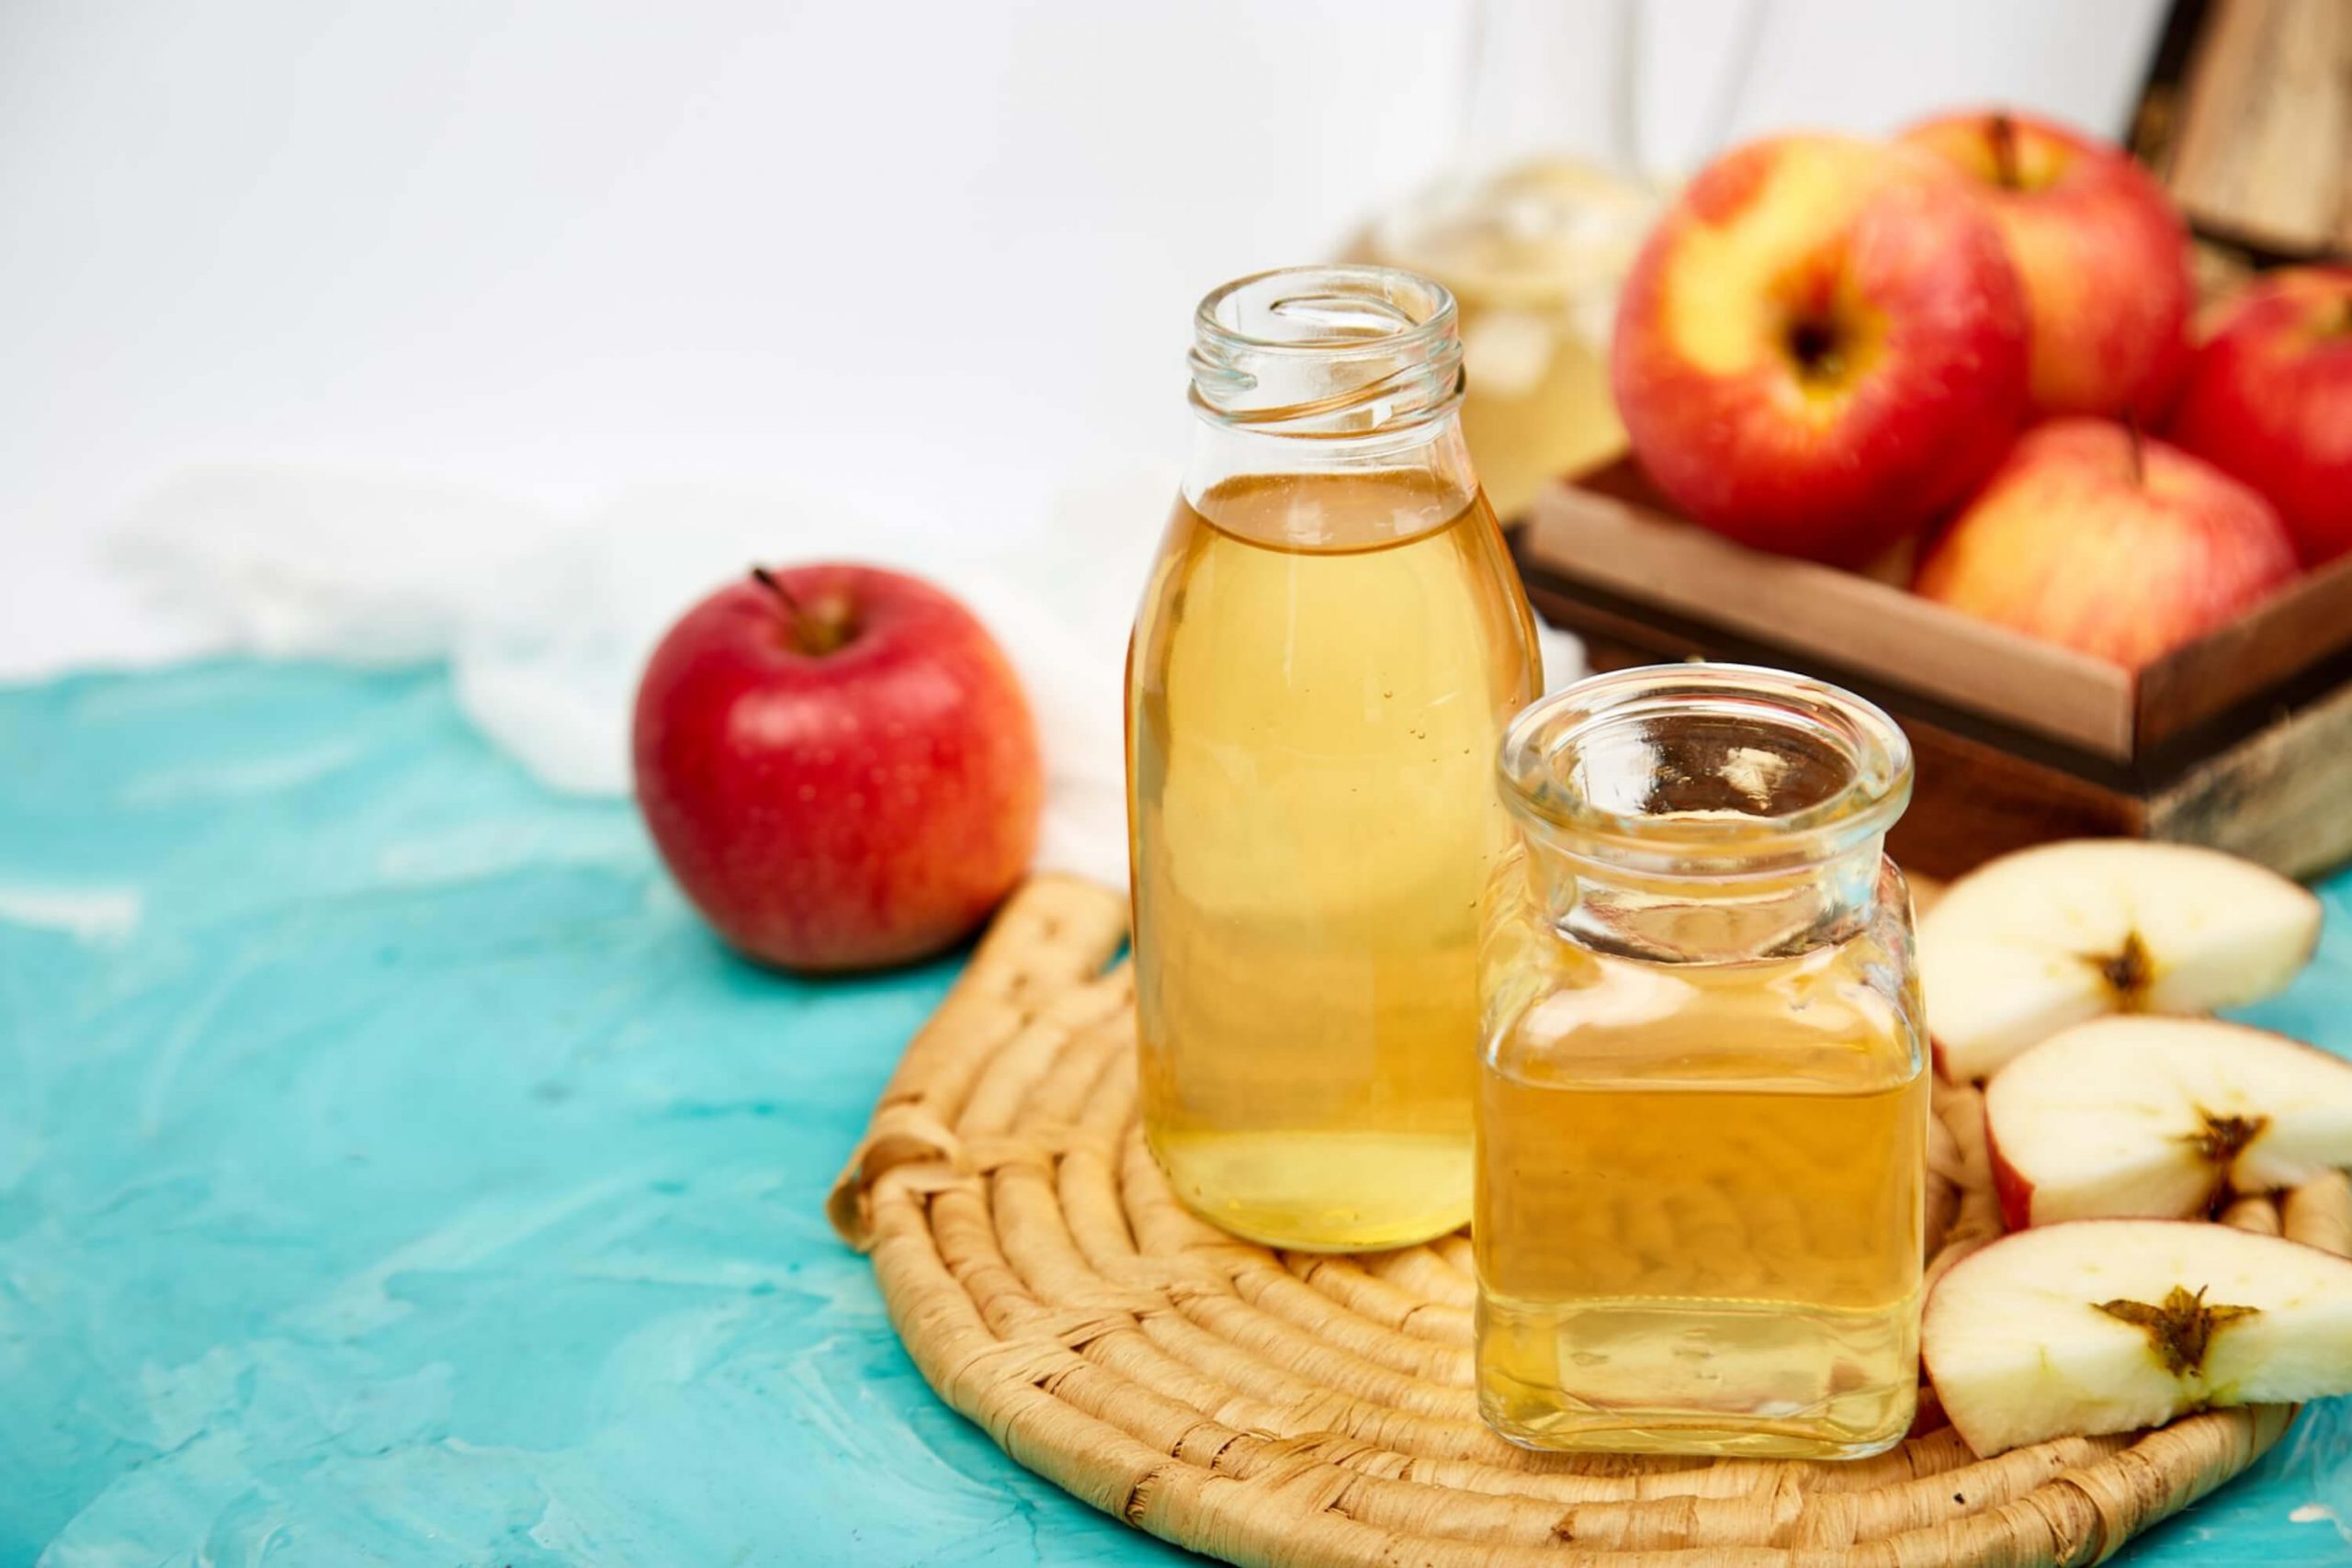 Get Rid Of Buildup With Apple Cider Vinegar